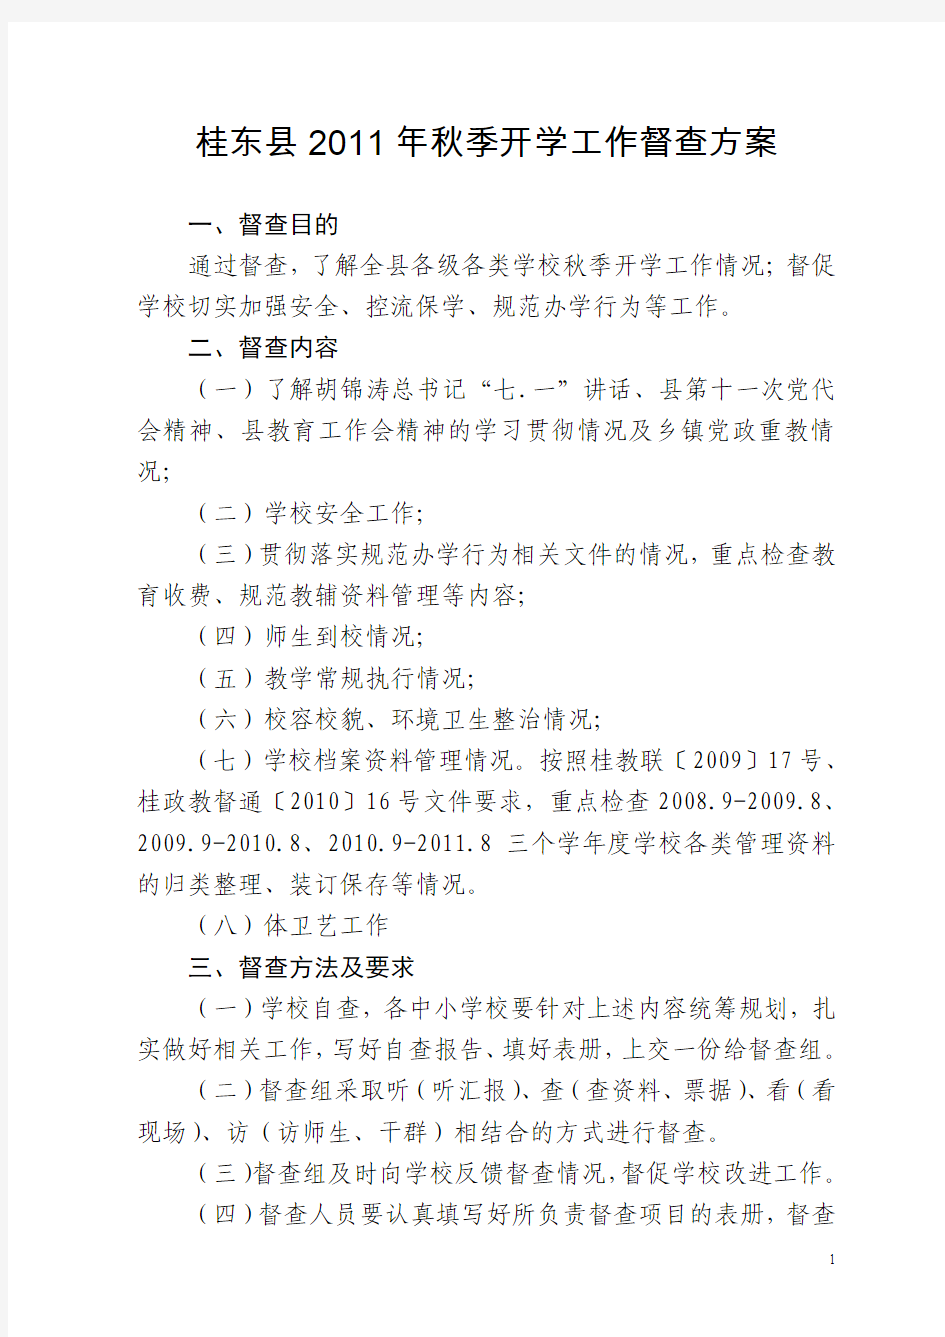 桂东县2011年秋季开学工作督查方案-33份